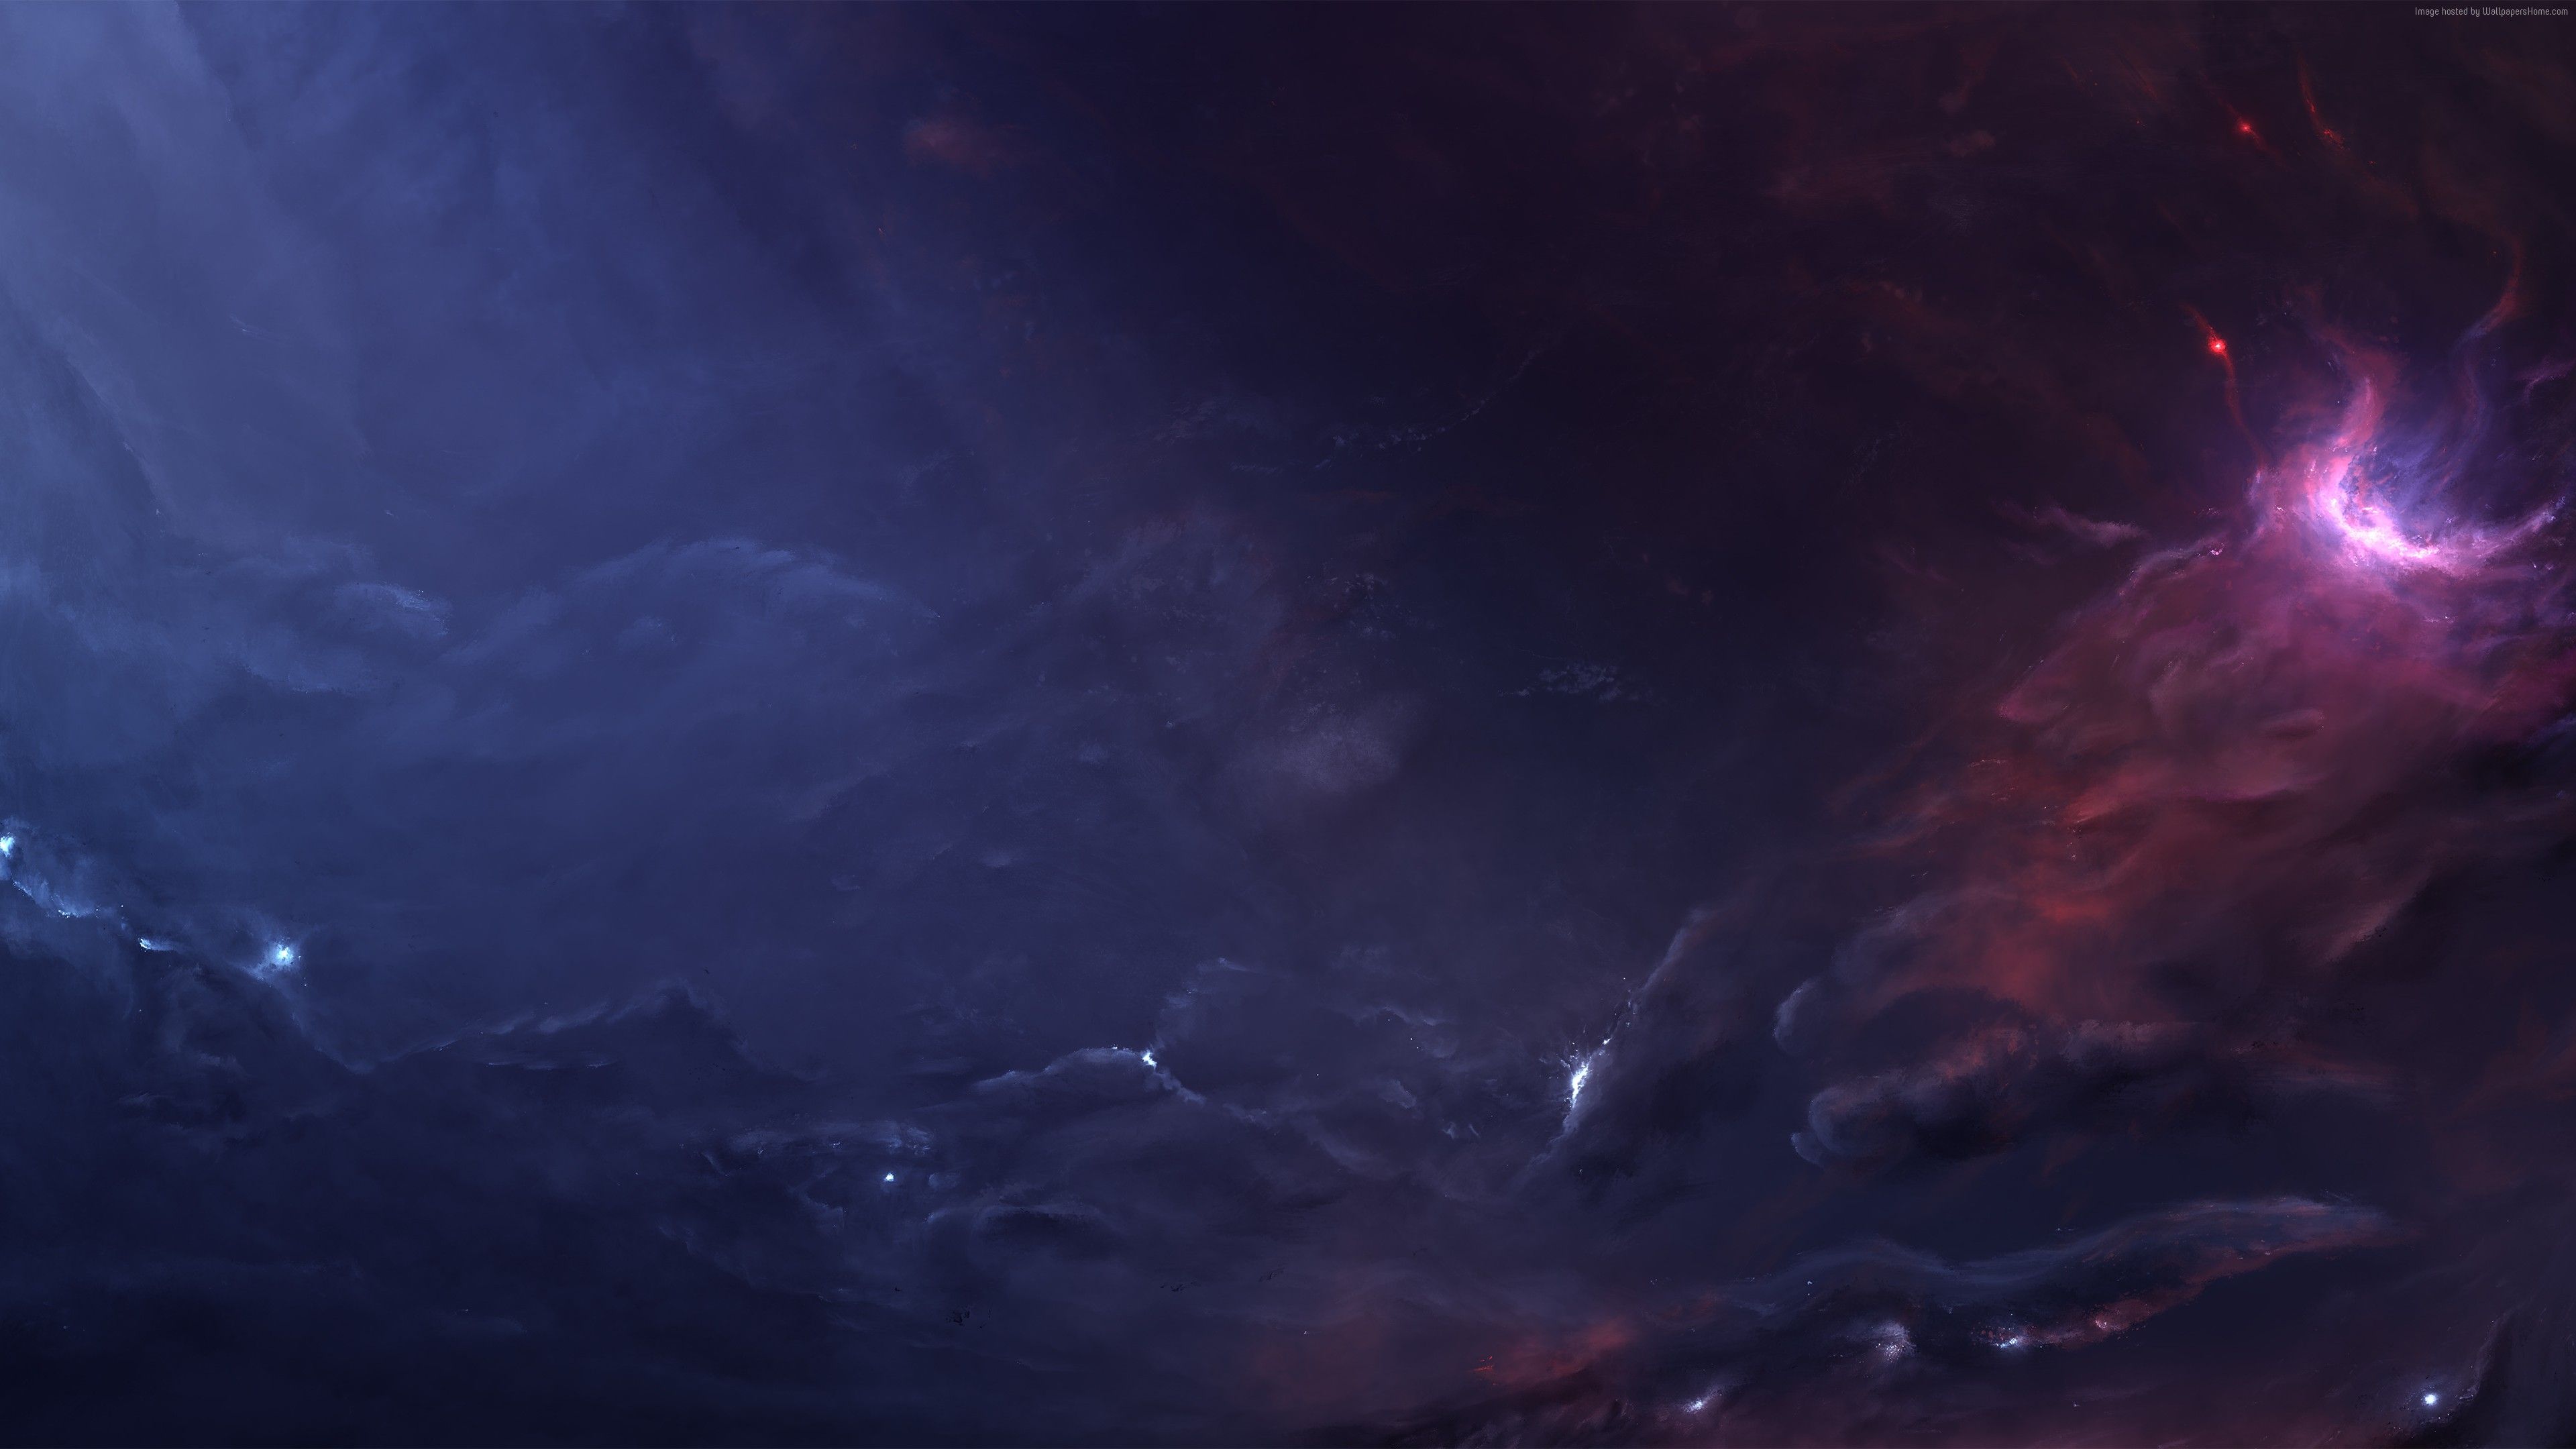 Nebula in space Wallpaper 8k Ultra HD ID:3906